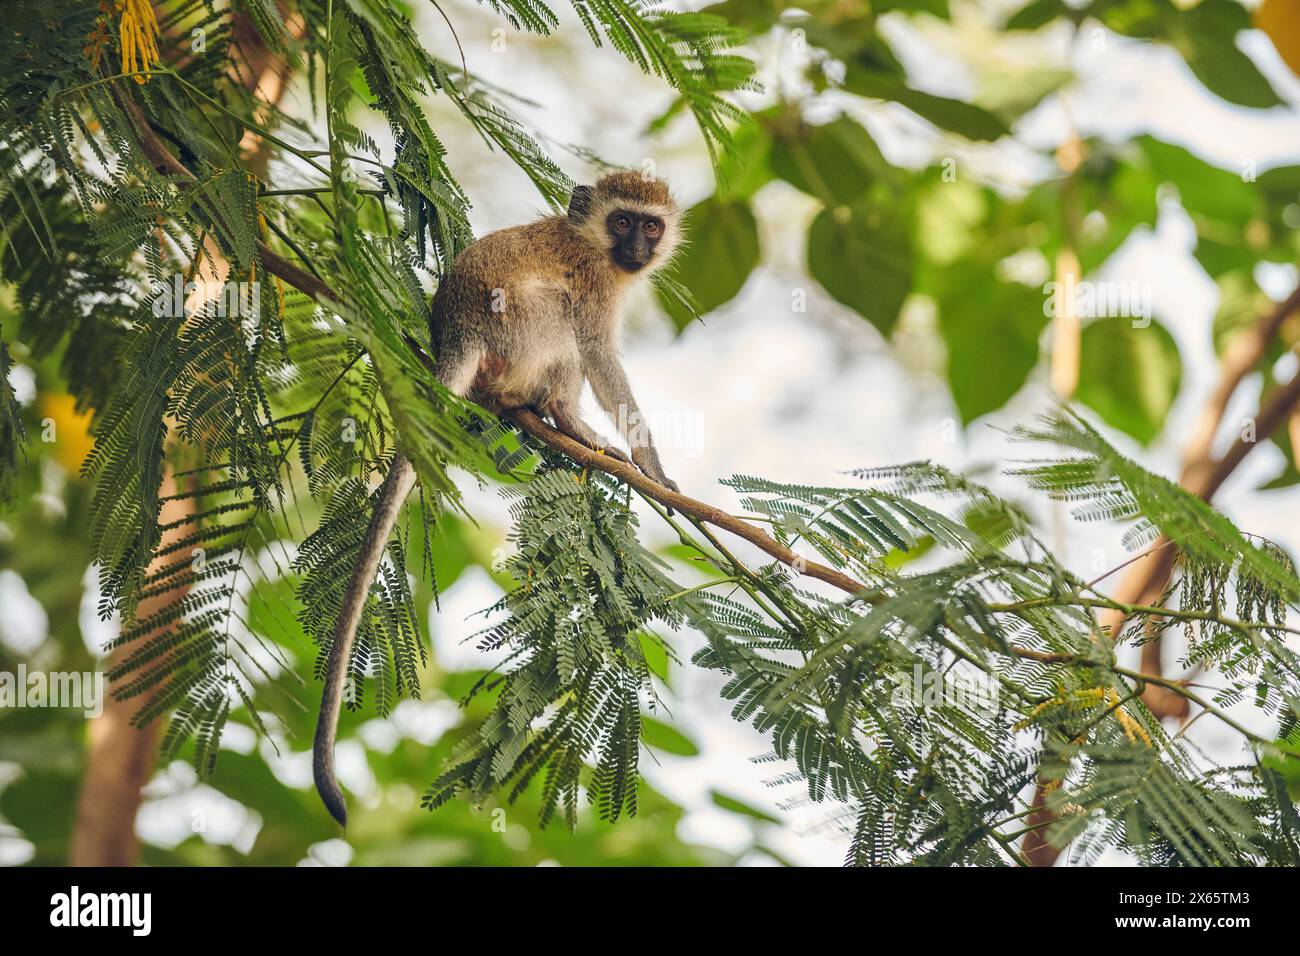 A vervet monkey nimbly jumps around the tree tops near Lake Many Stock Photo